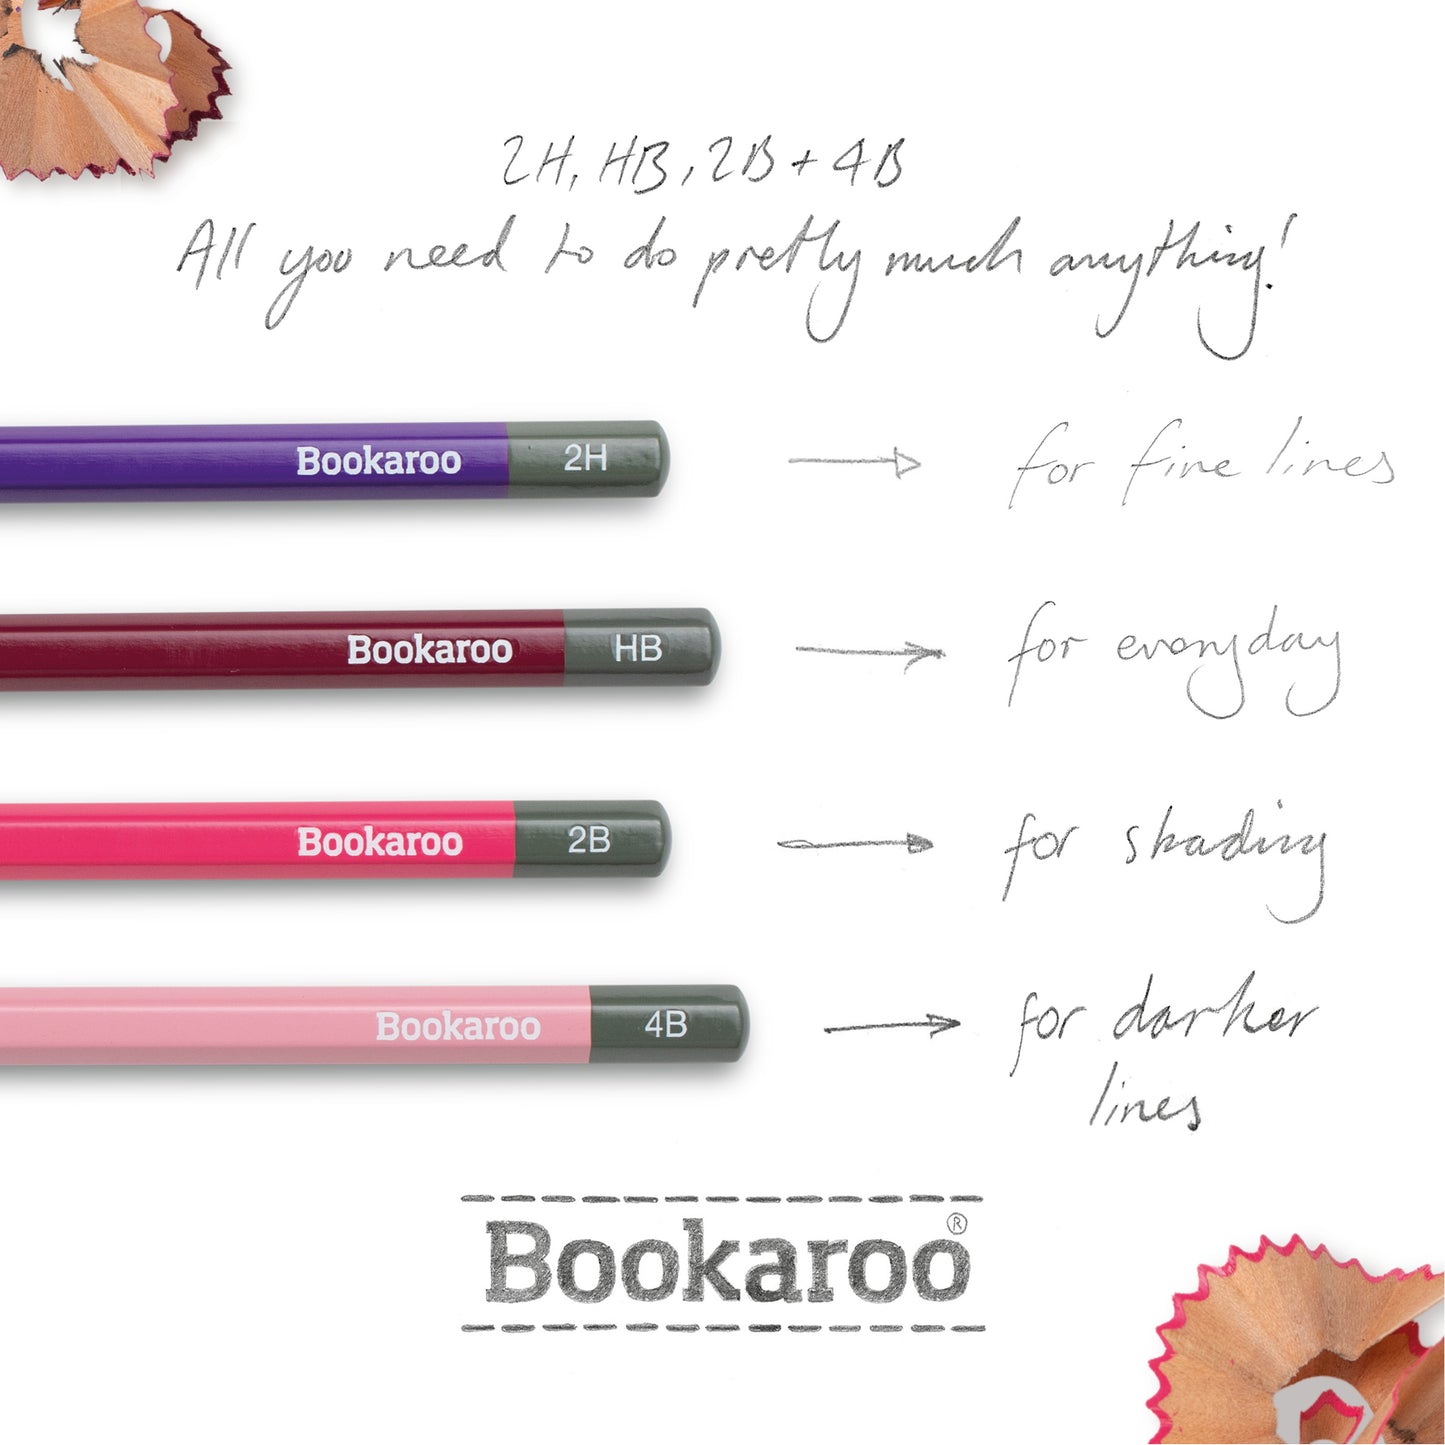 Bookaroo Pencils